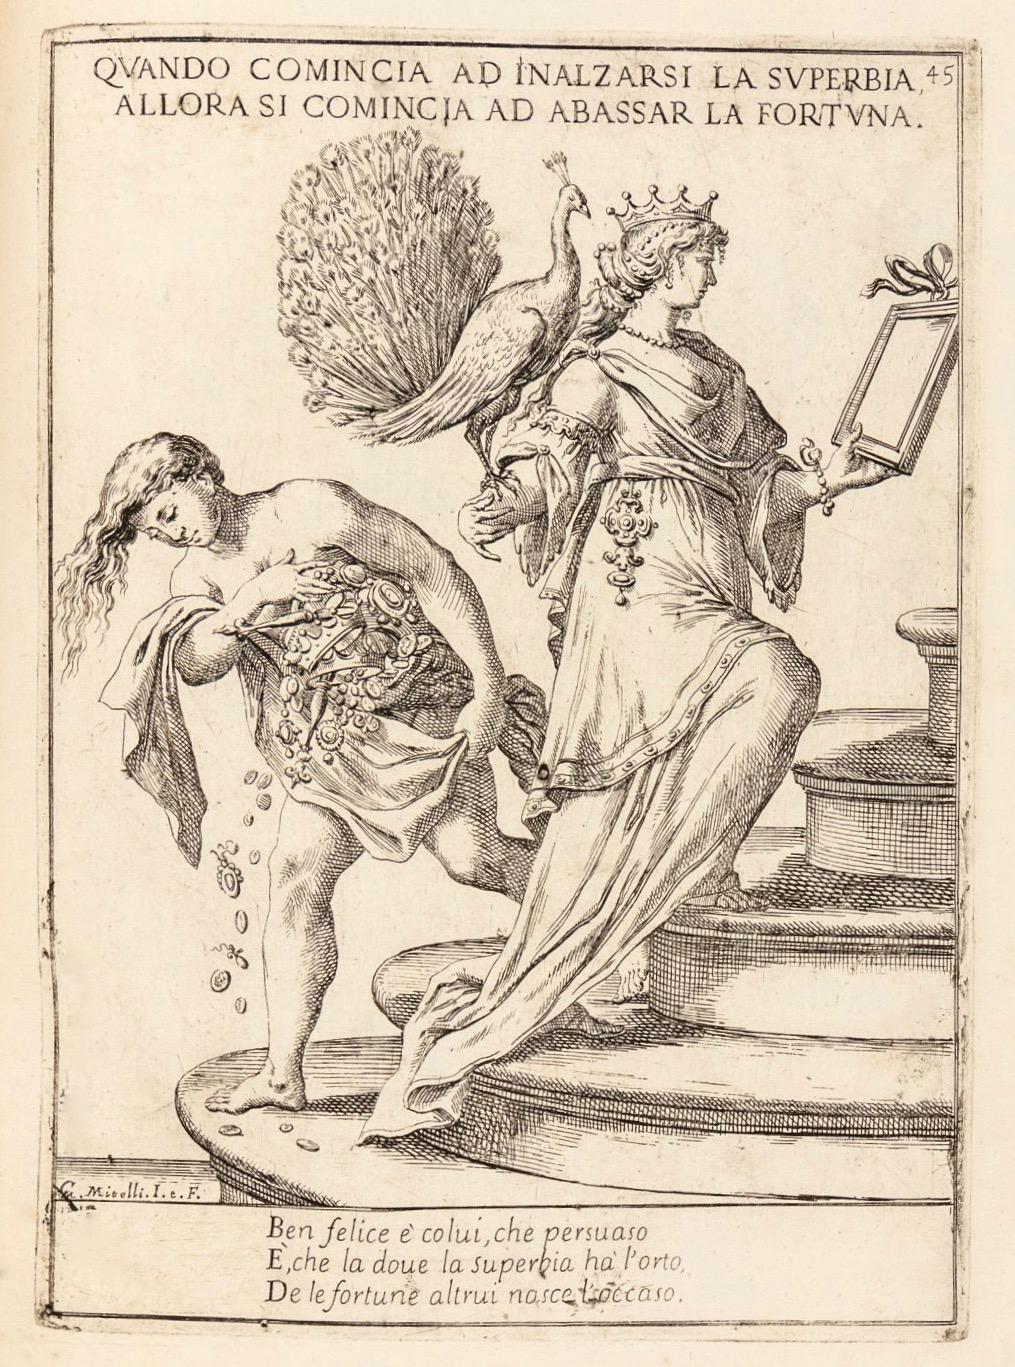 [Άνοδος της Υπεροψίας, Κάθοδος της Τύχης], Giuseppe Maria Mitelli, Proverbi figurati, Bologna, 1678.